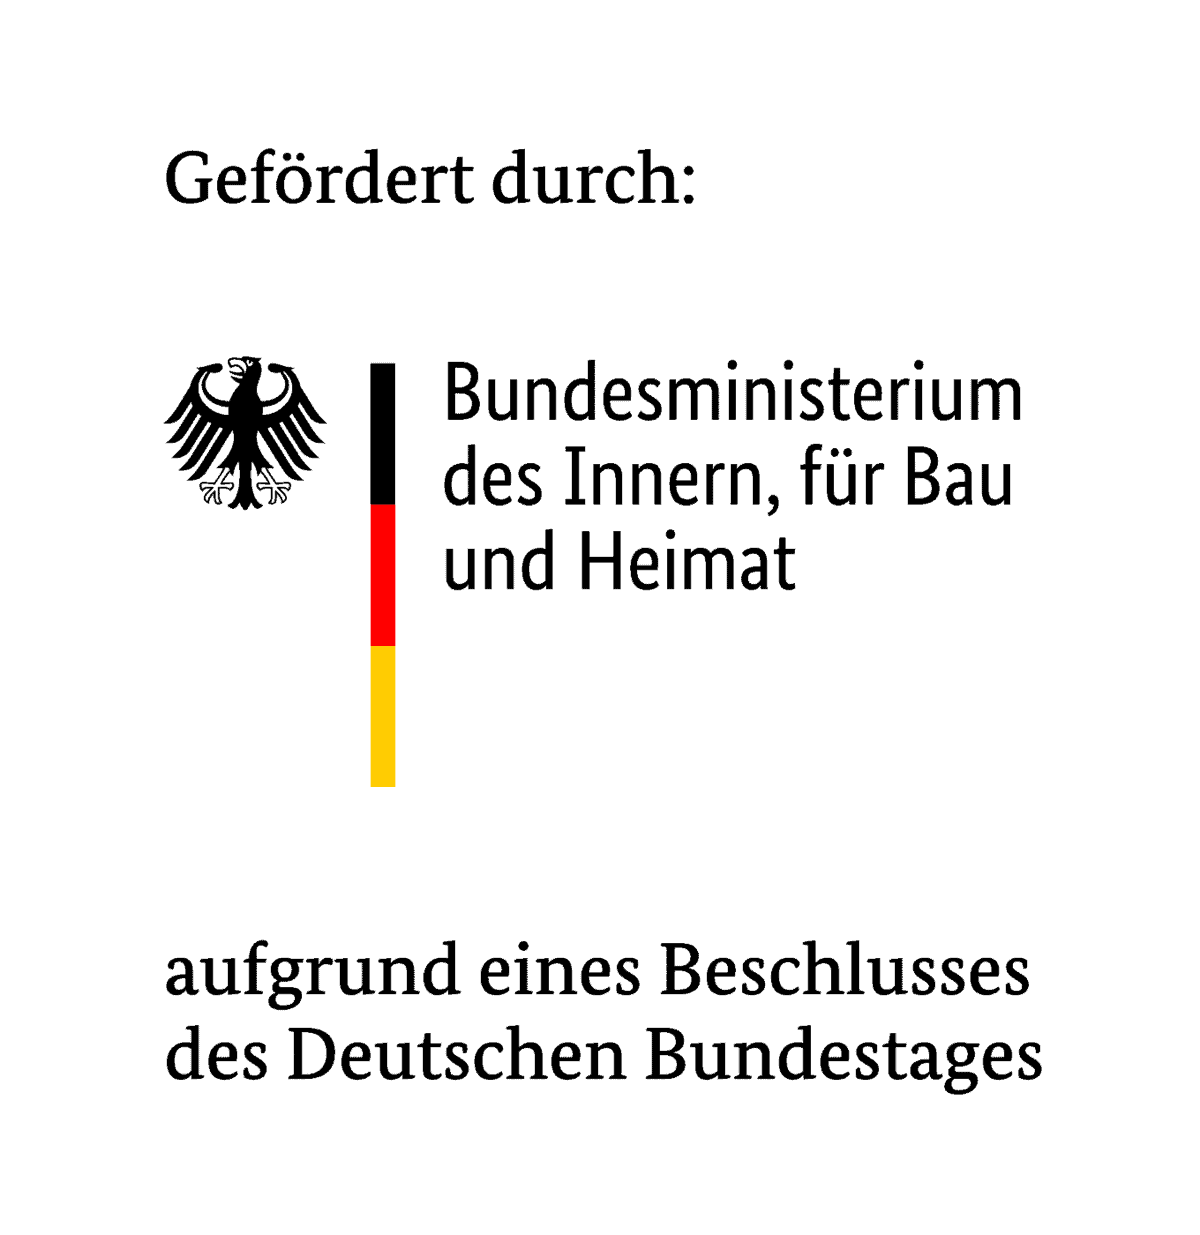 Gefördert durch: Bundesministerium des Innern, für Bau und Heimat aufgrund eines Beschlusses des Deutschen Bundestages